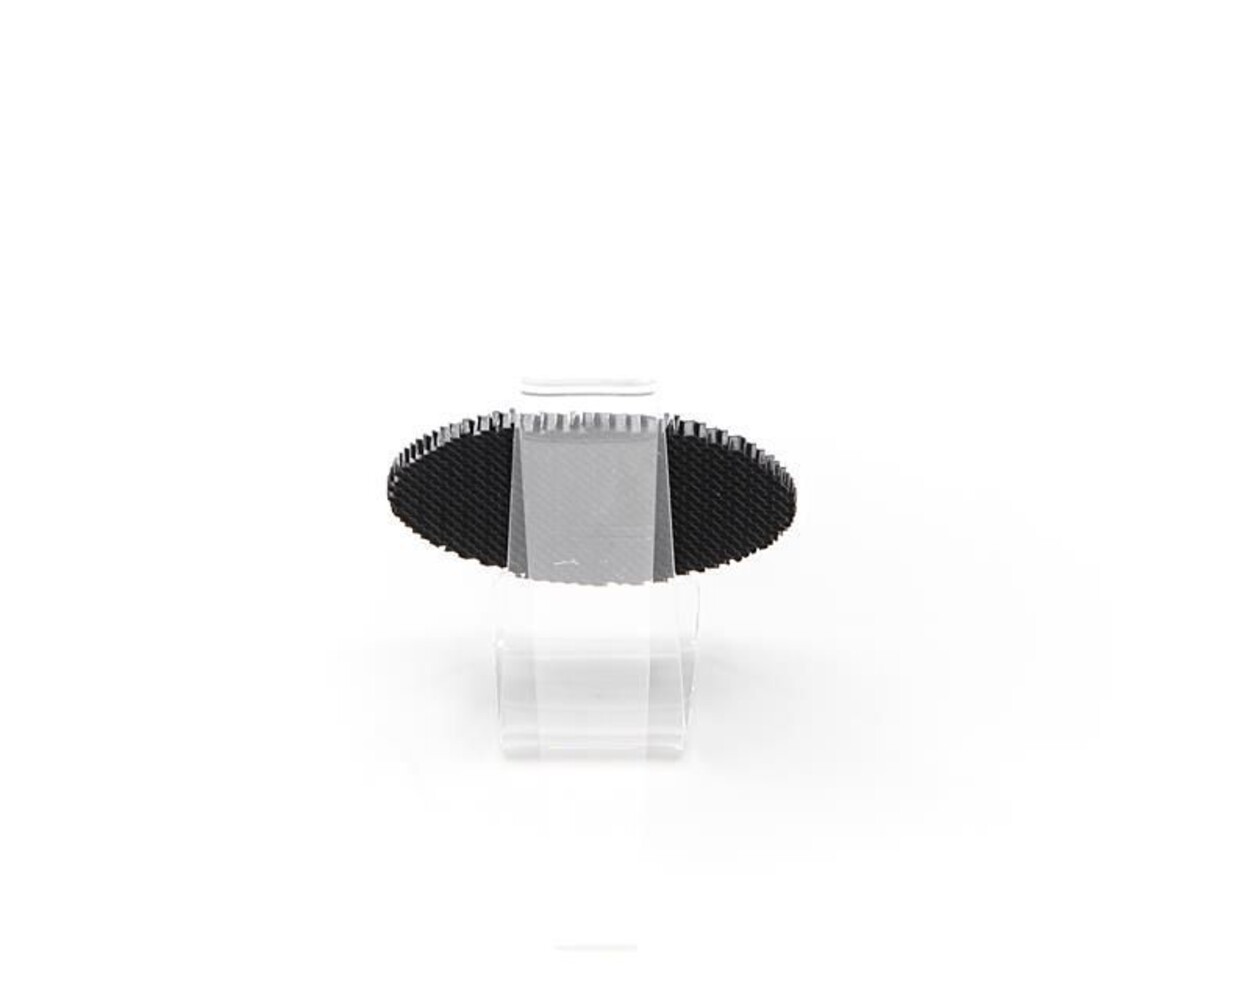 Hochwertiges Zubehör von Deko-Light, Waben Filter für modulares System, 3mm Höhe